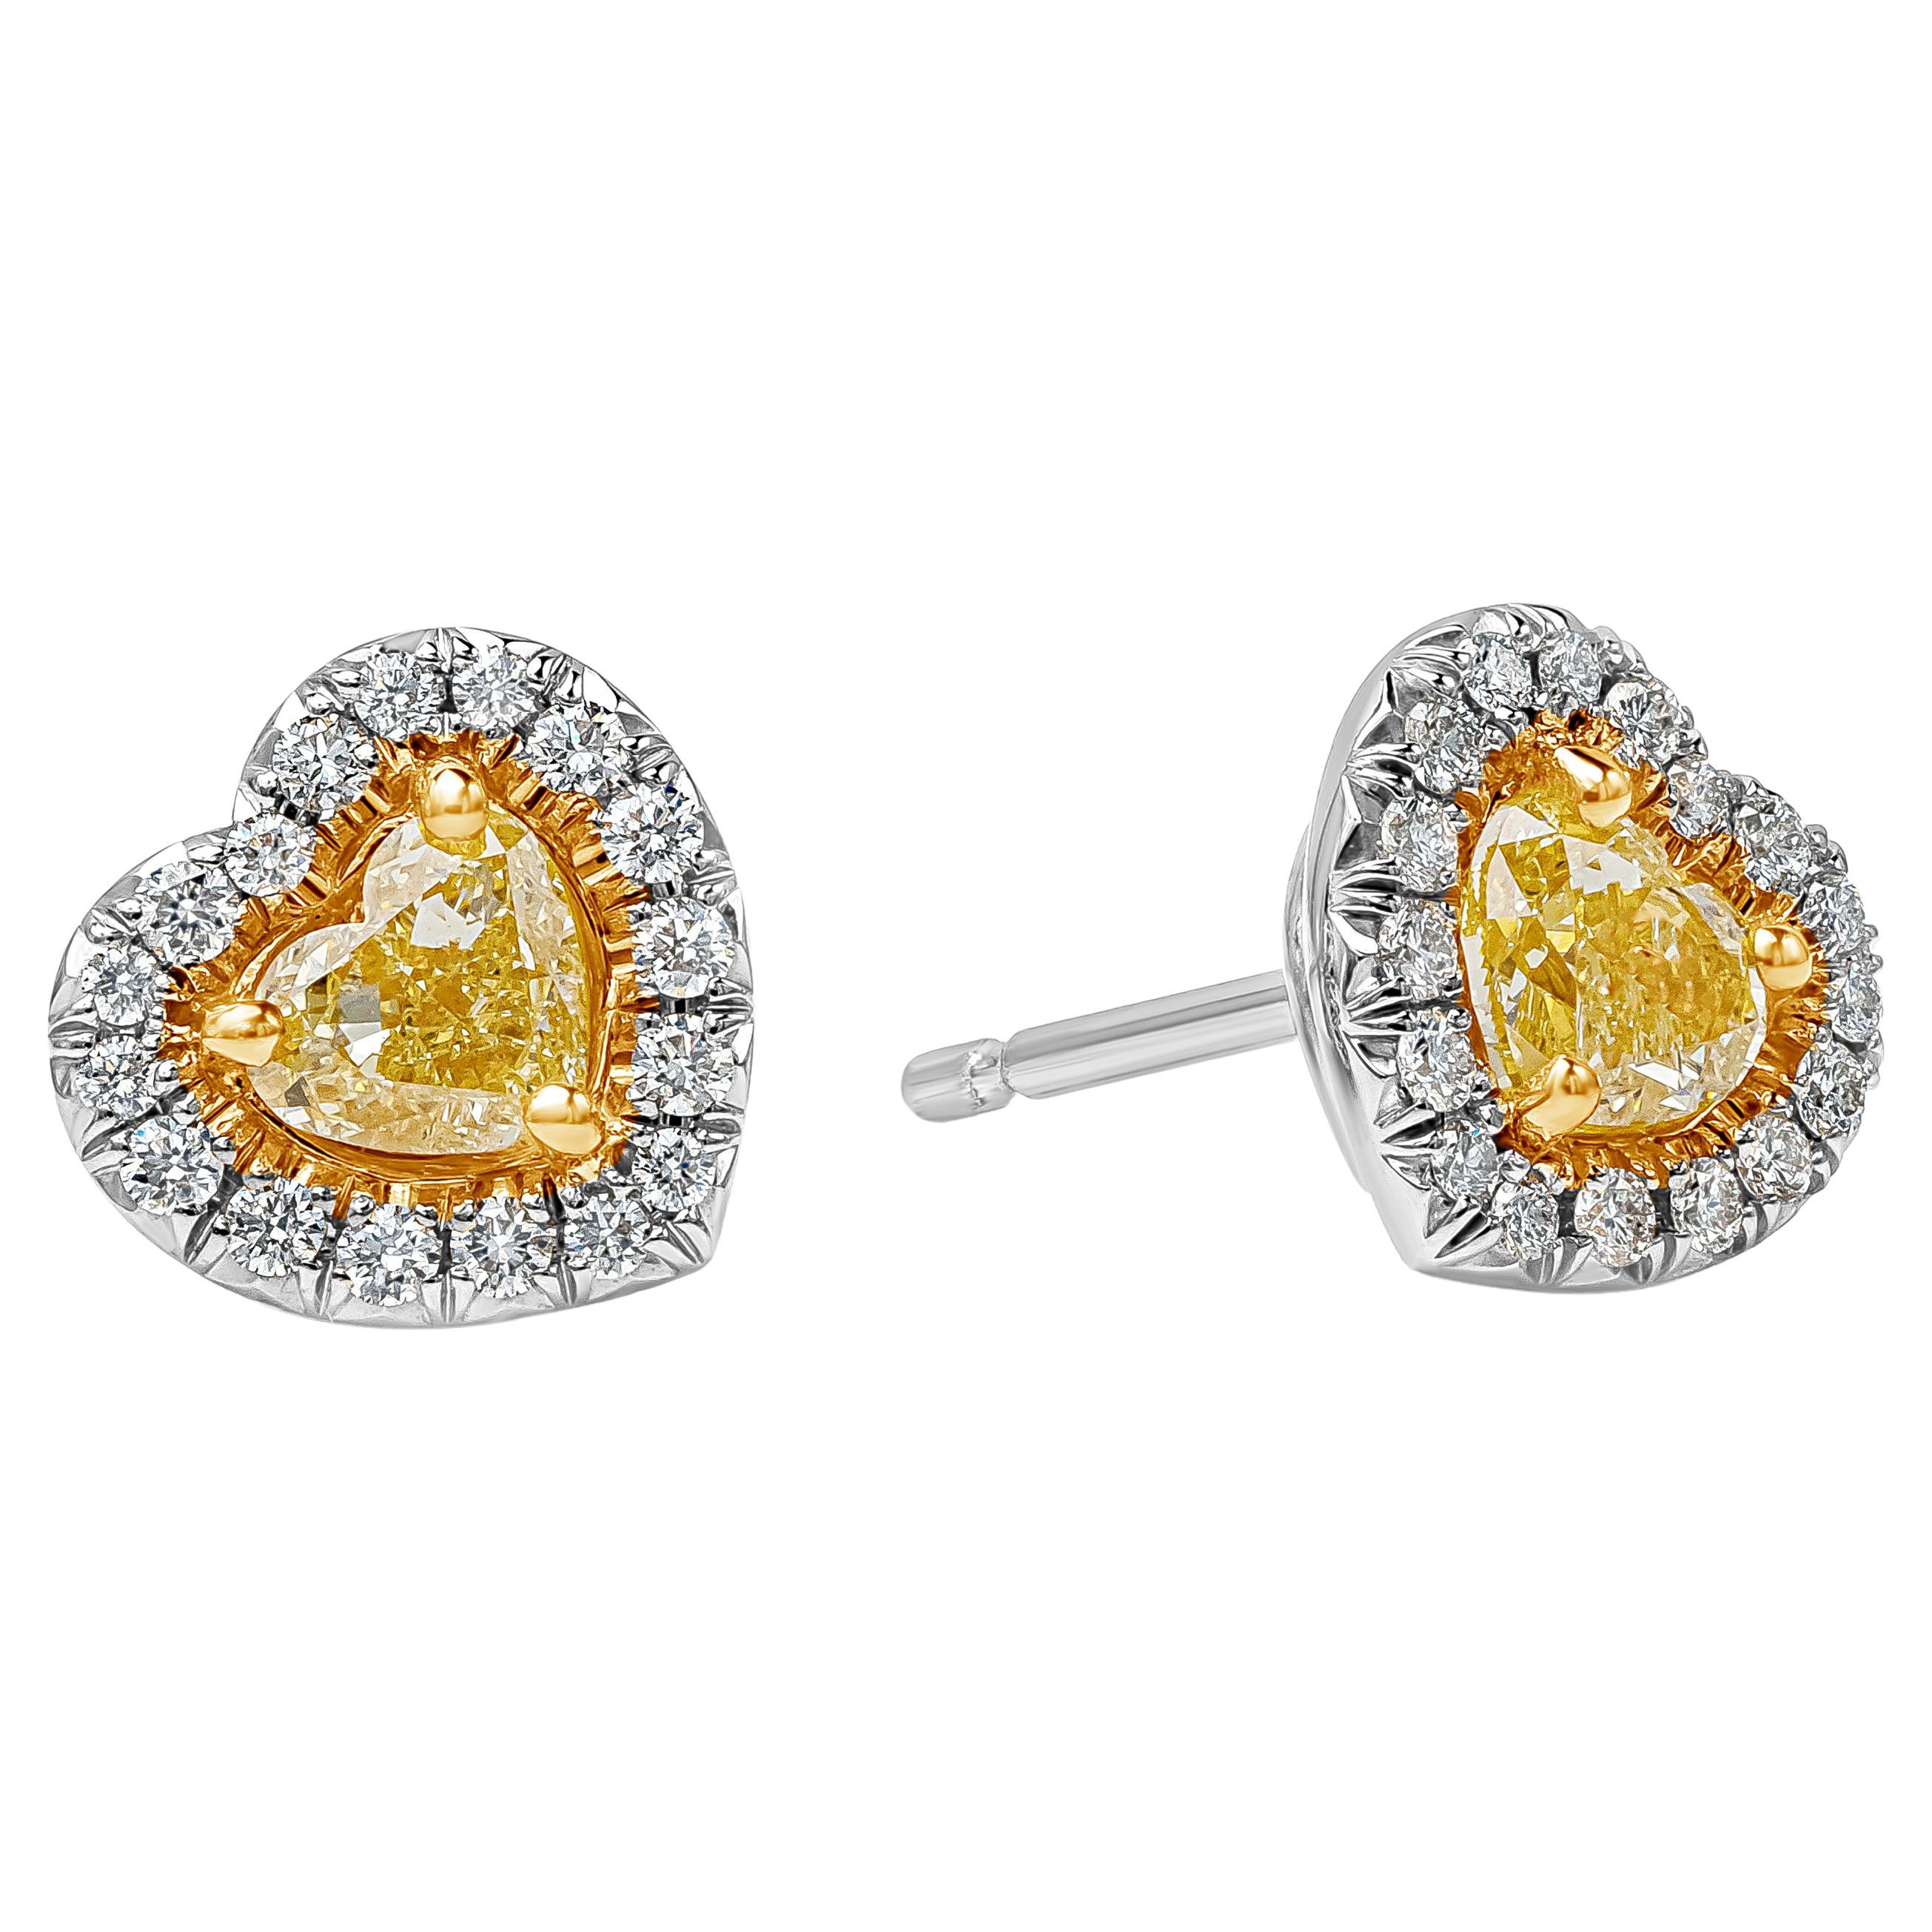 Roman Malakov 0.69 Carats Total Heart Shape Fancy Yellow Diamond Stud Earrings